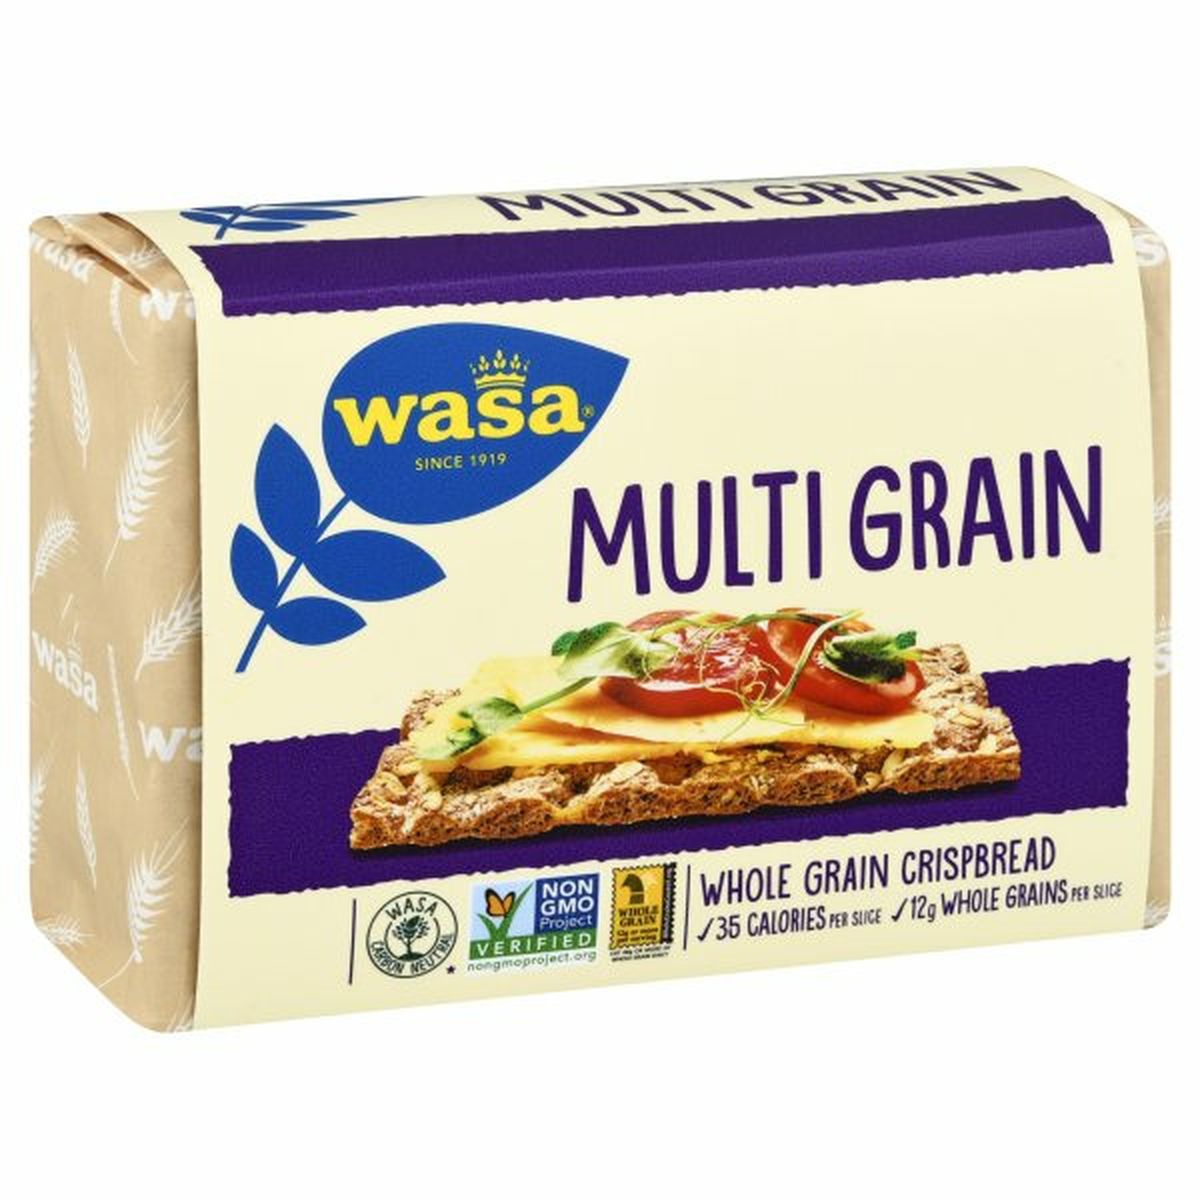 Calories in Wasa Crispbread, Whole Grain, Multi Grain